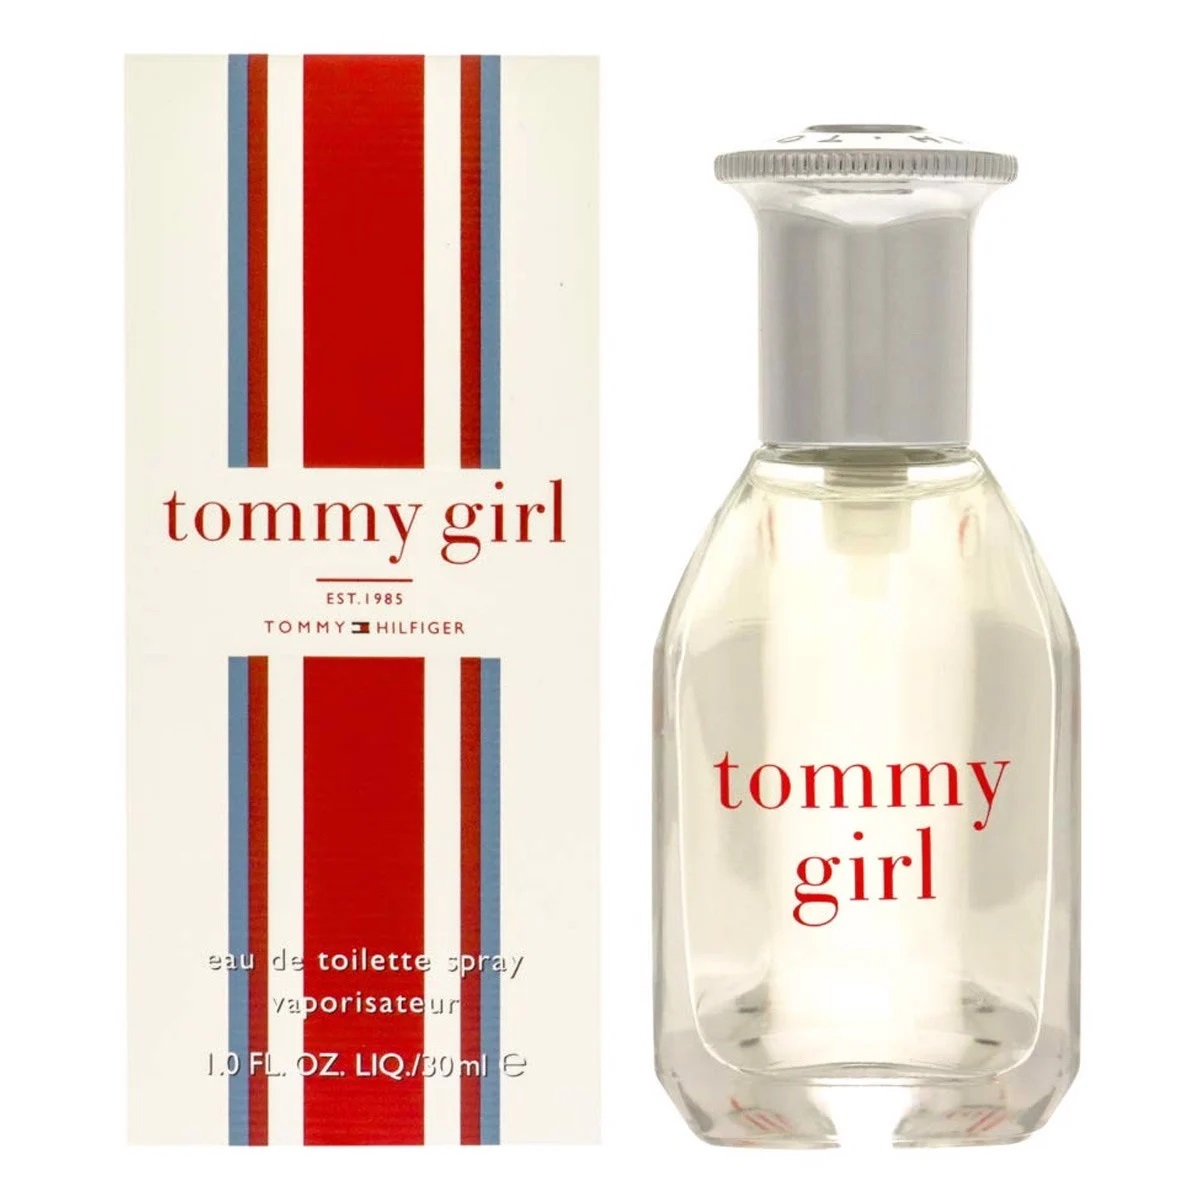 NƯỚC HOA NỮ TOMMY HILFIGER TOMMY GIRL EAU DE TOILETTE 3